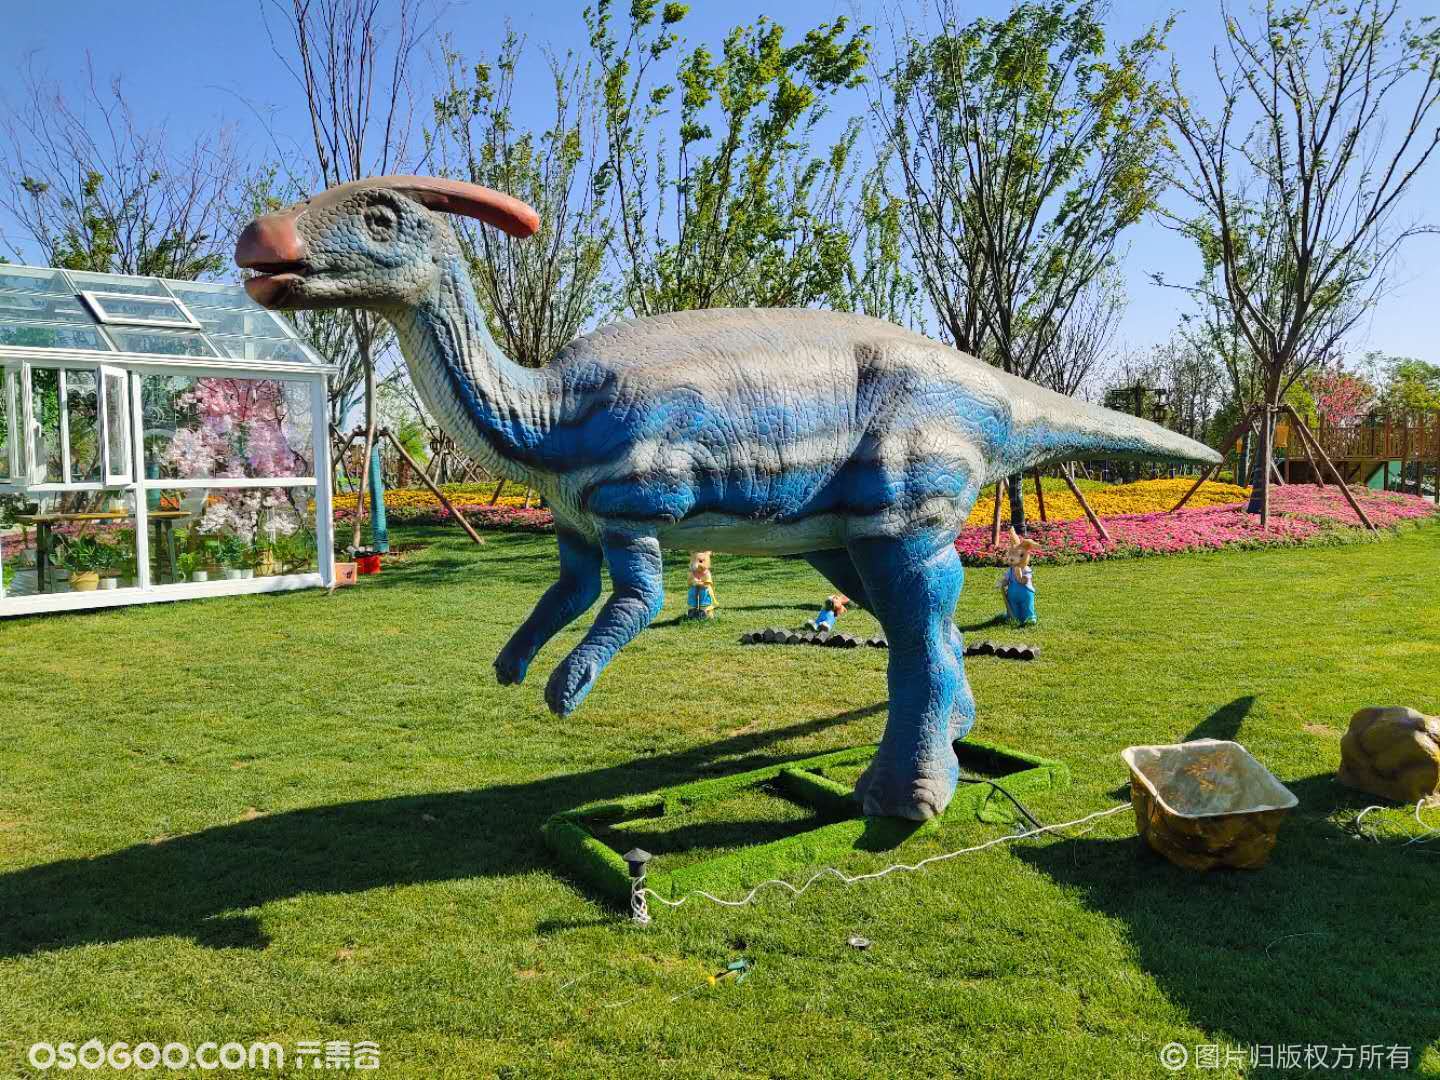 侏罗纪恐龙探险乐园 | 高雄旅游网